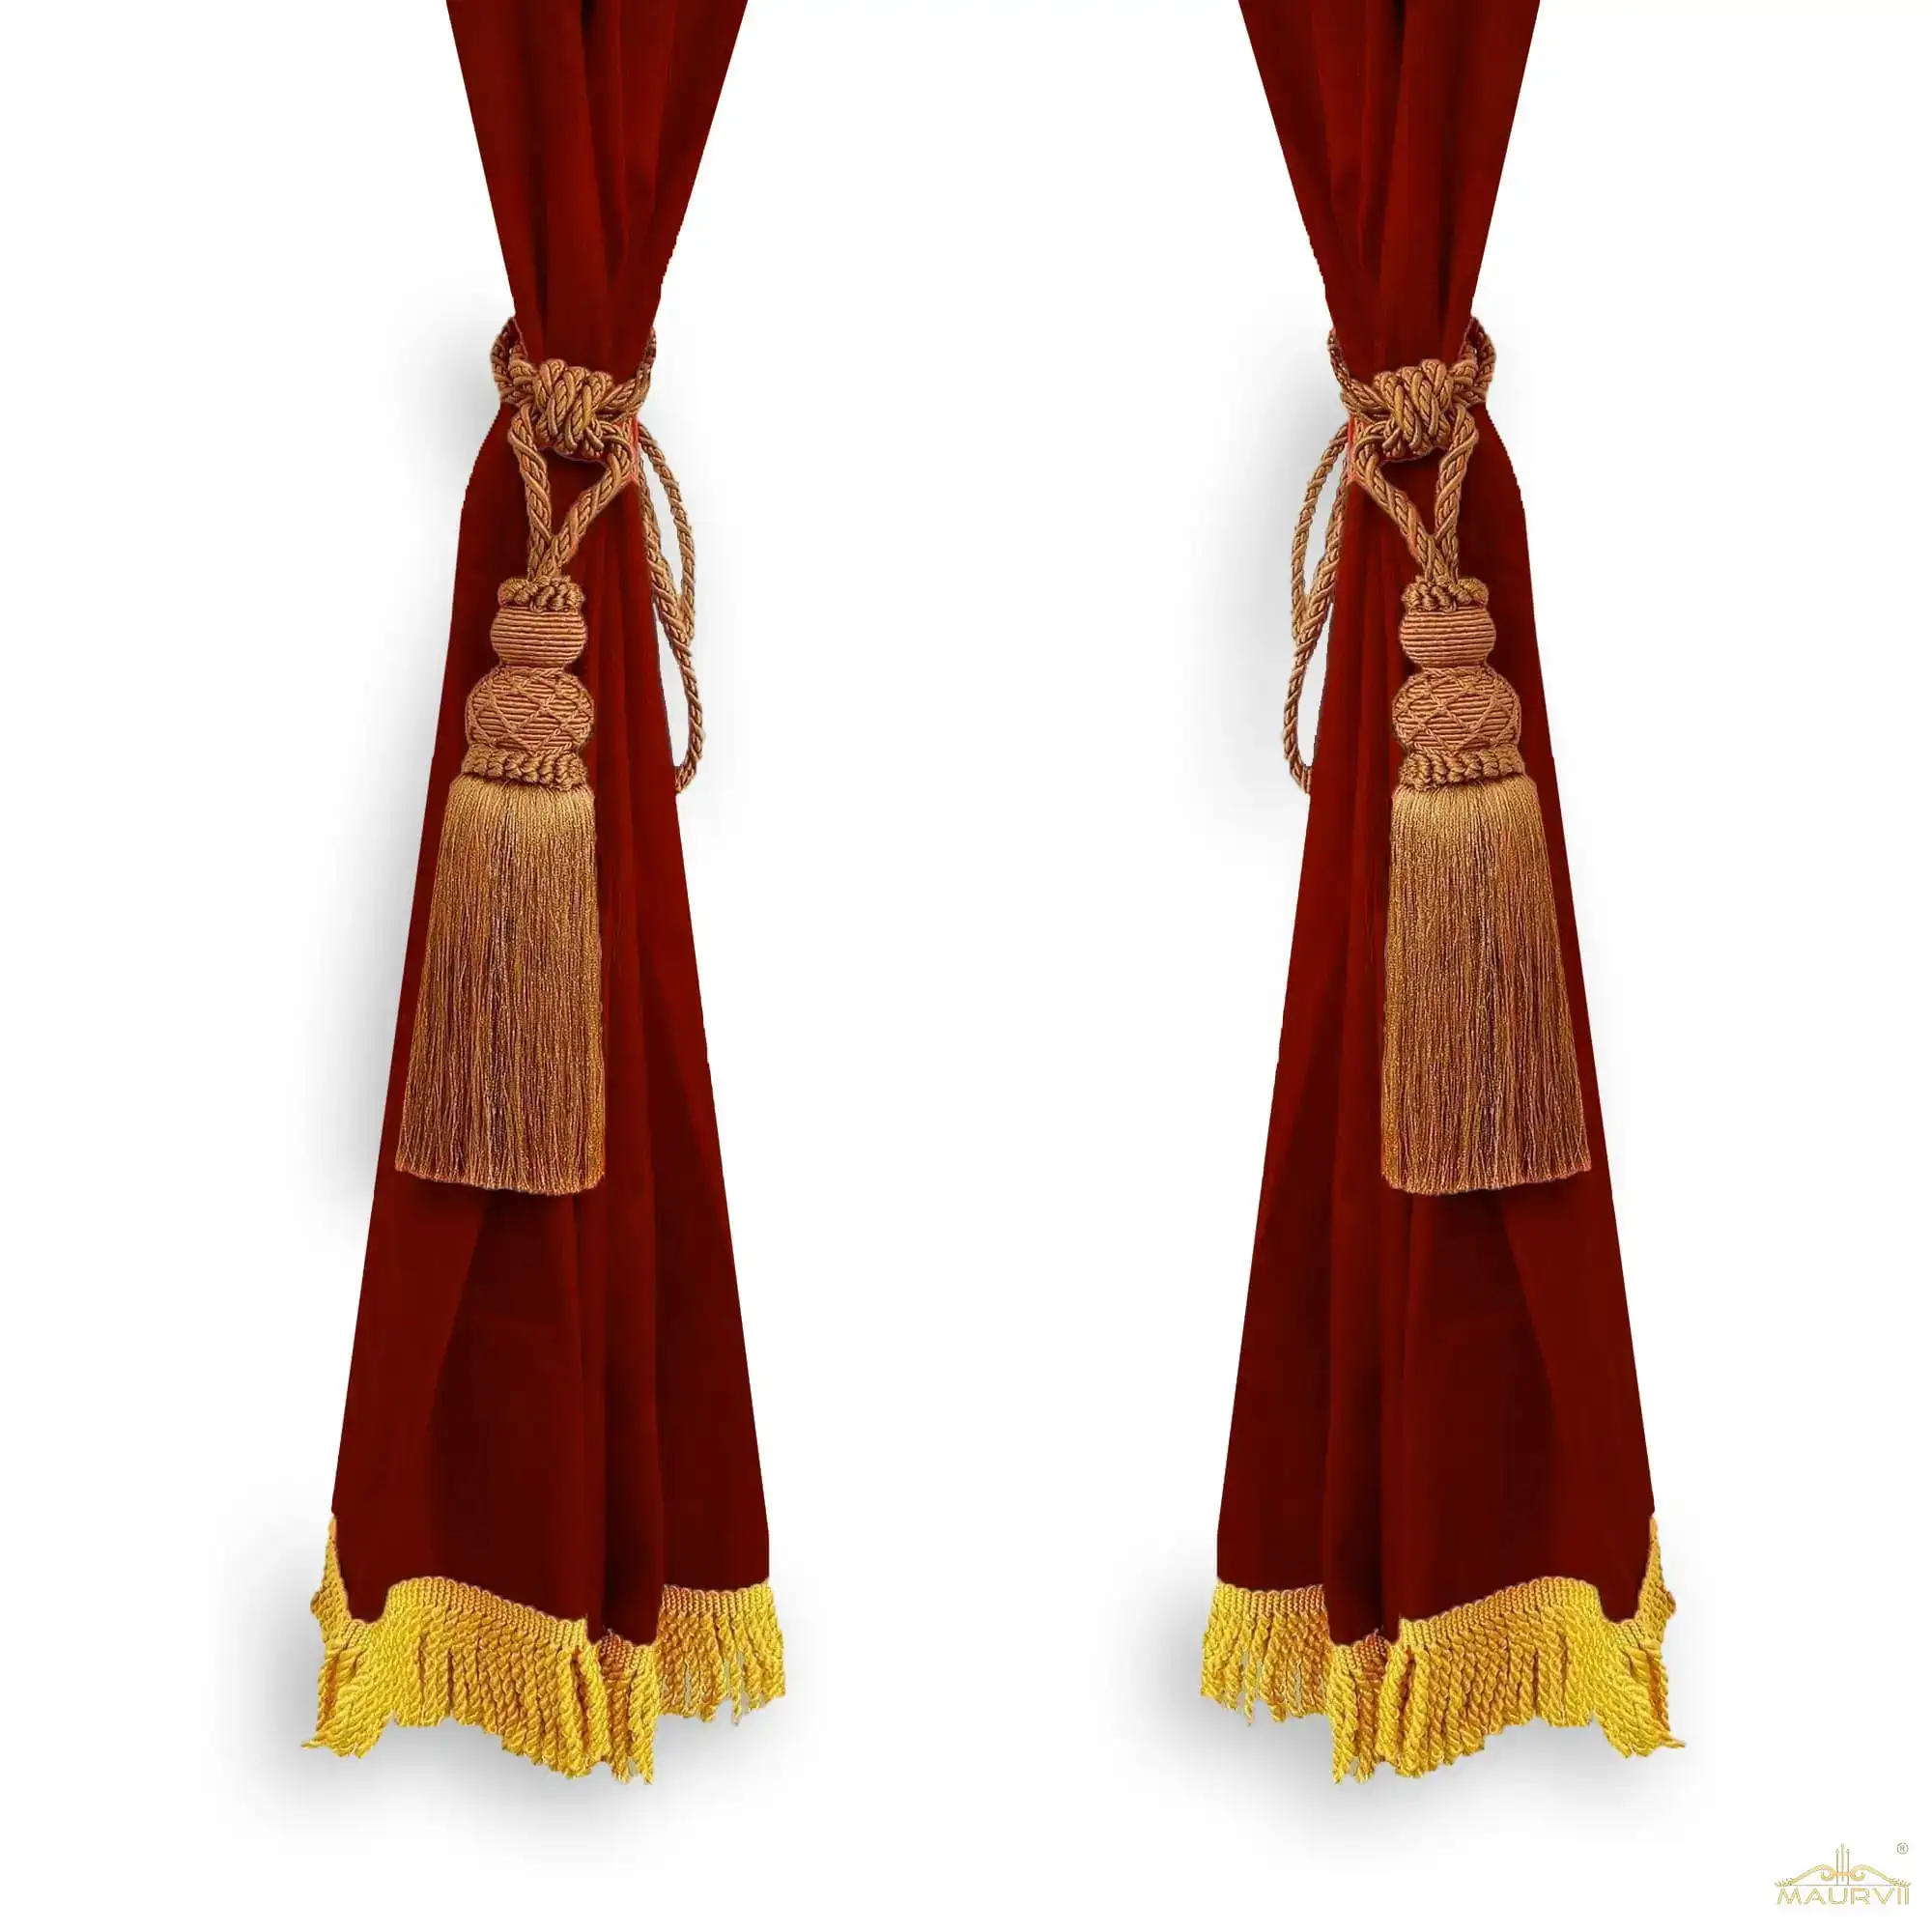 Burgundy velvet curtains with tassel